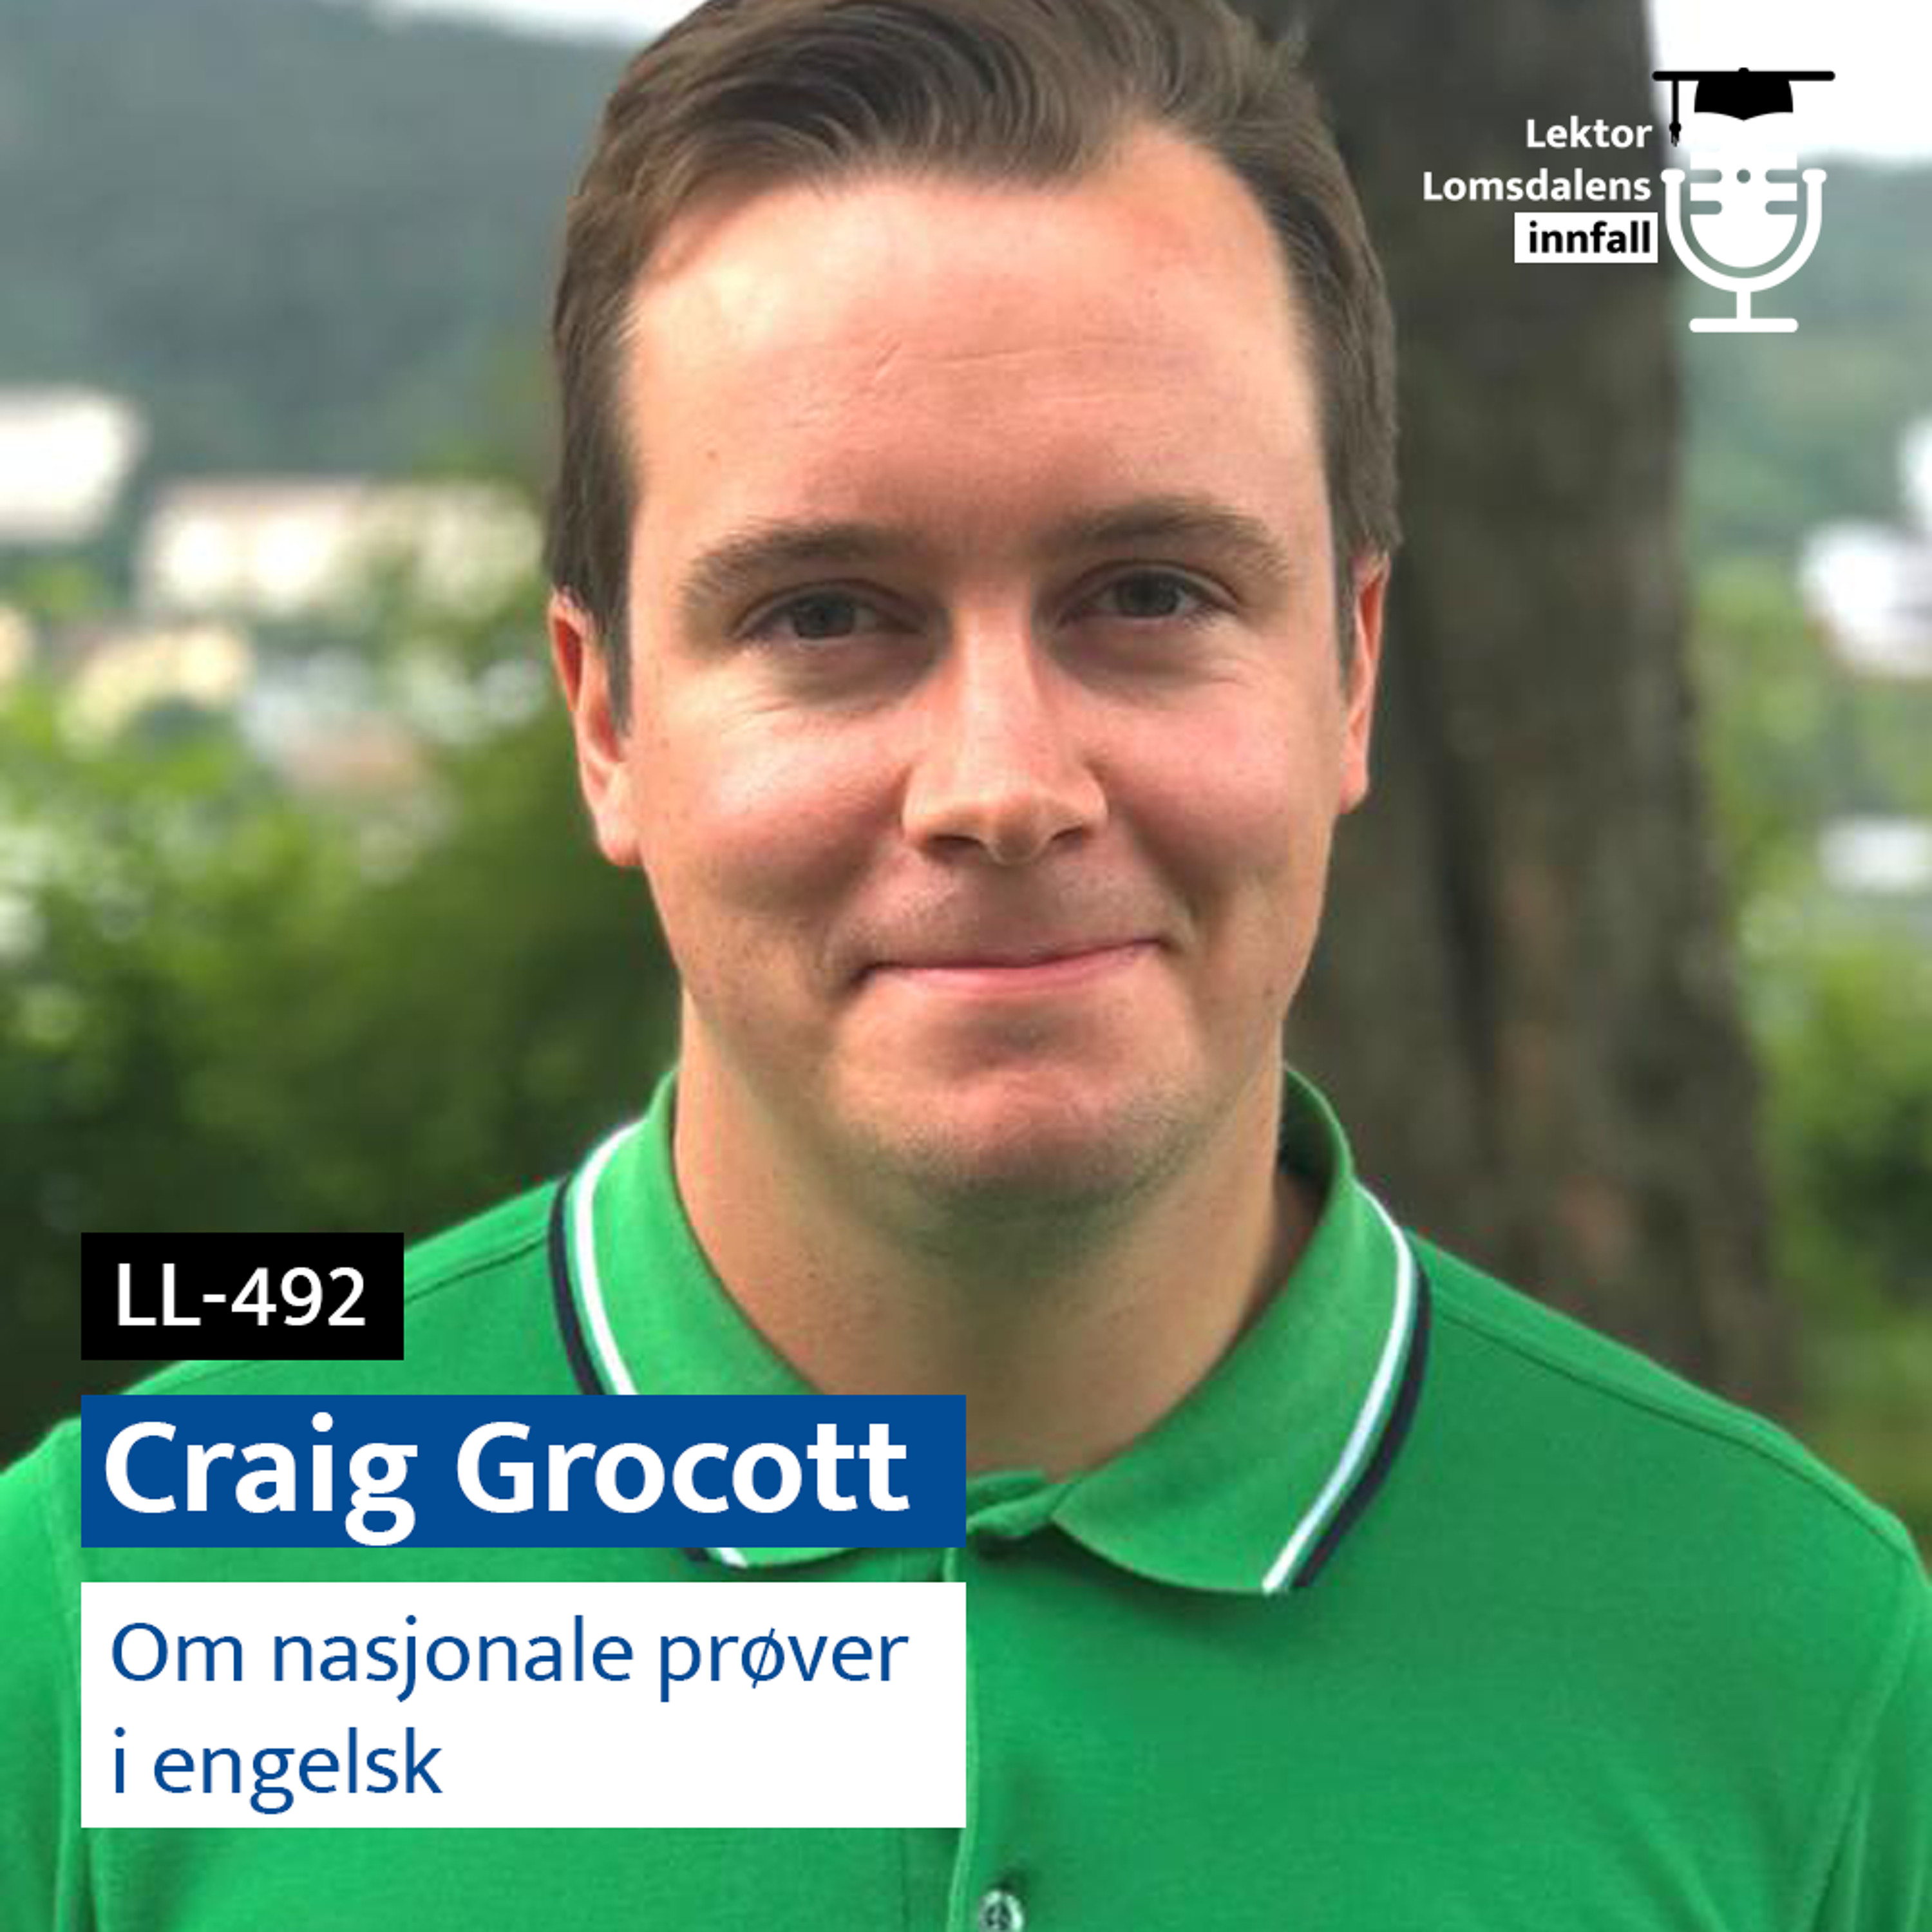 LL-492: Craig Grocott om nasjonale prøver i engelsk